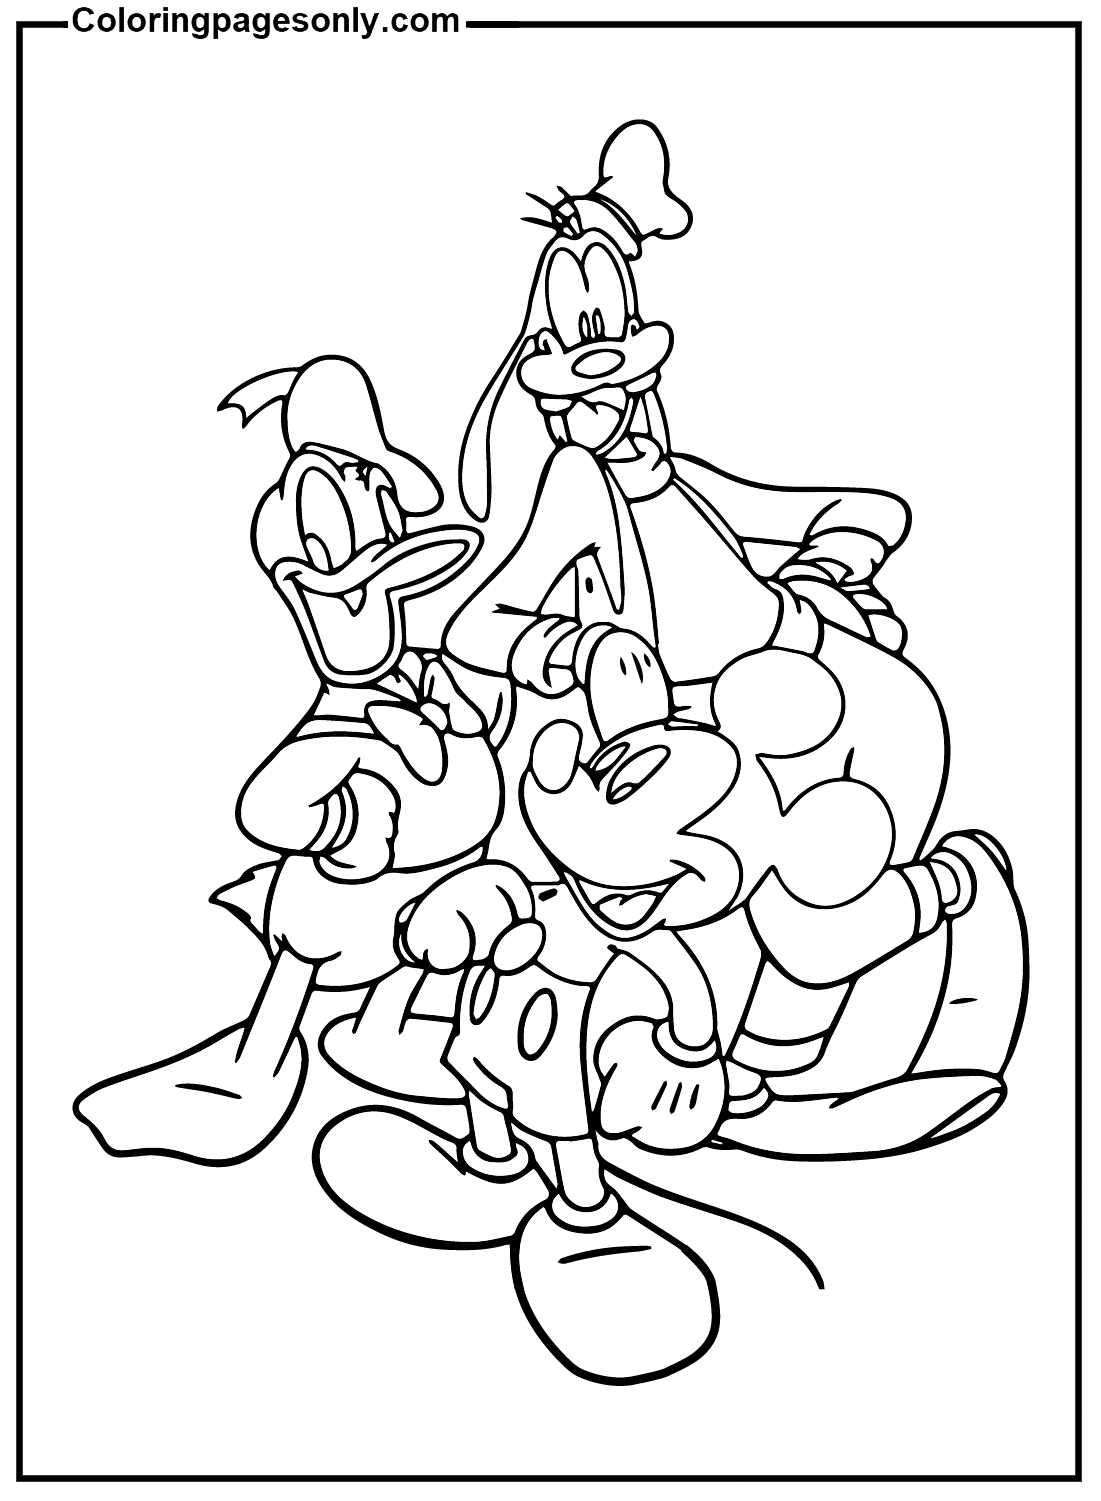 Goofy, Mickey Mouse, Donald Duck Kingdom Hearts von Kingdom Hearts